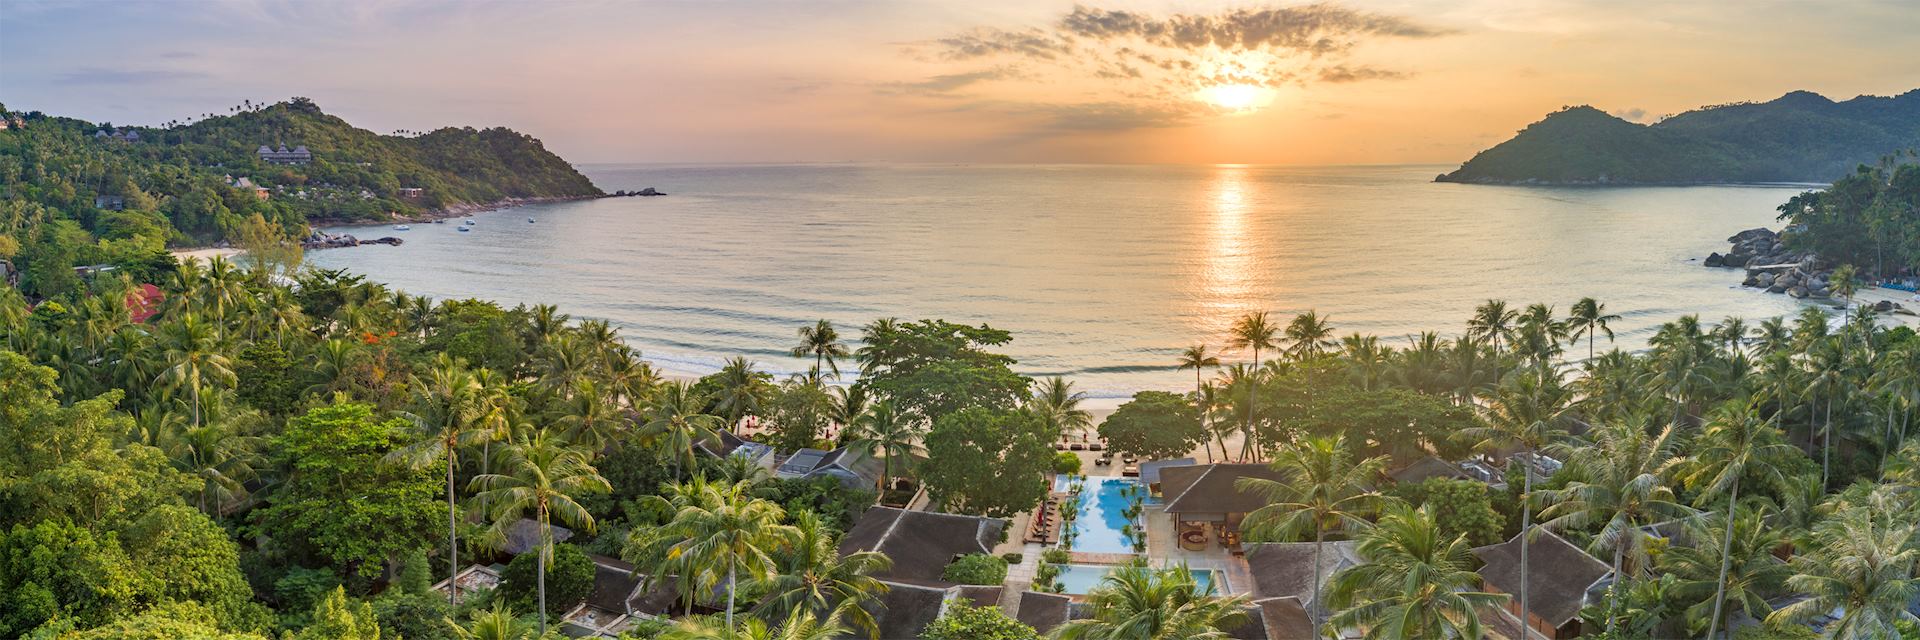 Aerial view of Anantara Rasananda Resort